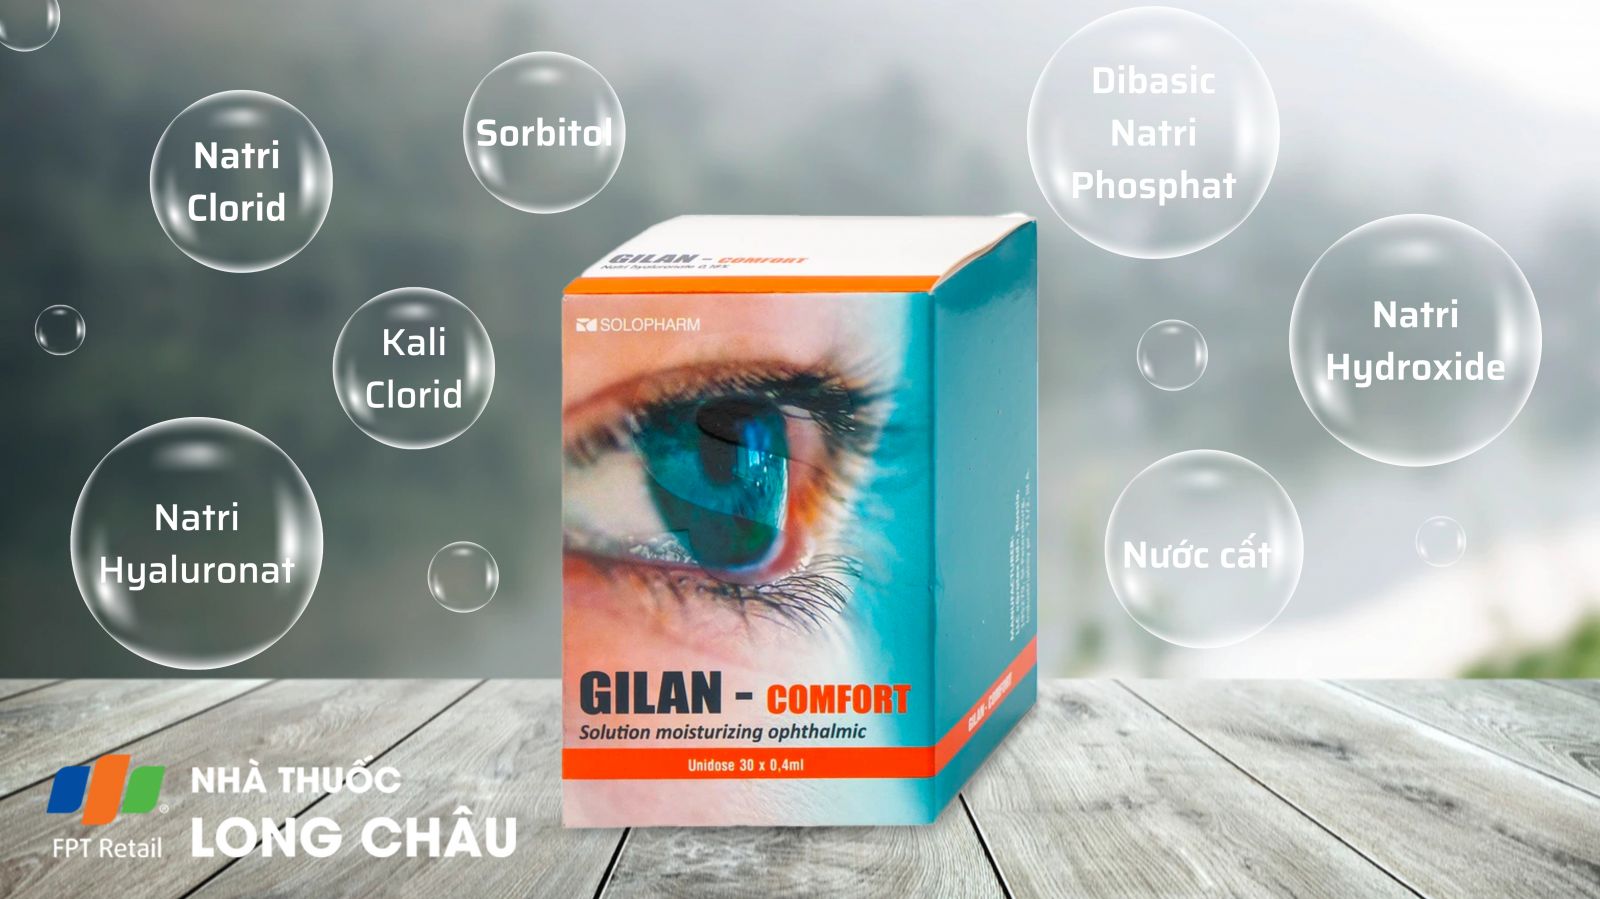 Gilan Comfort 1